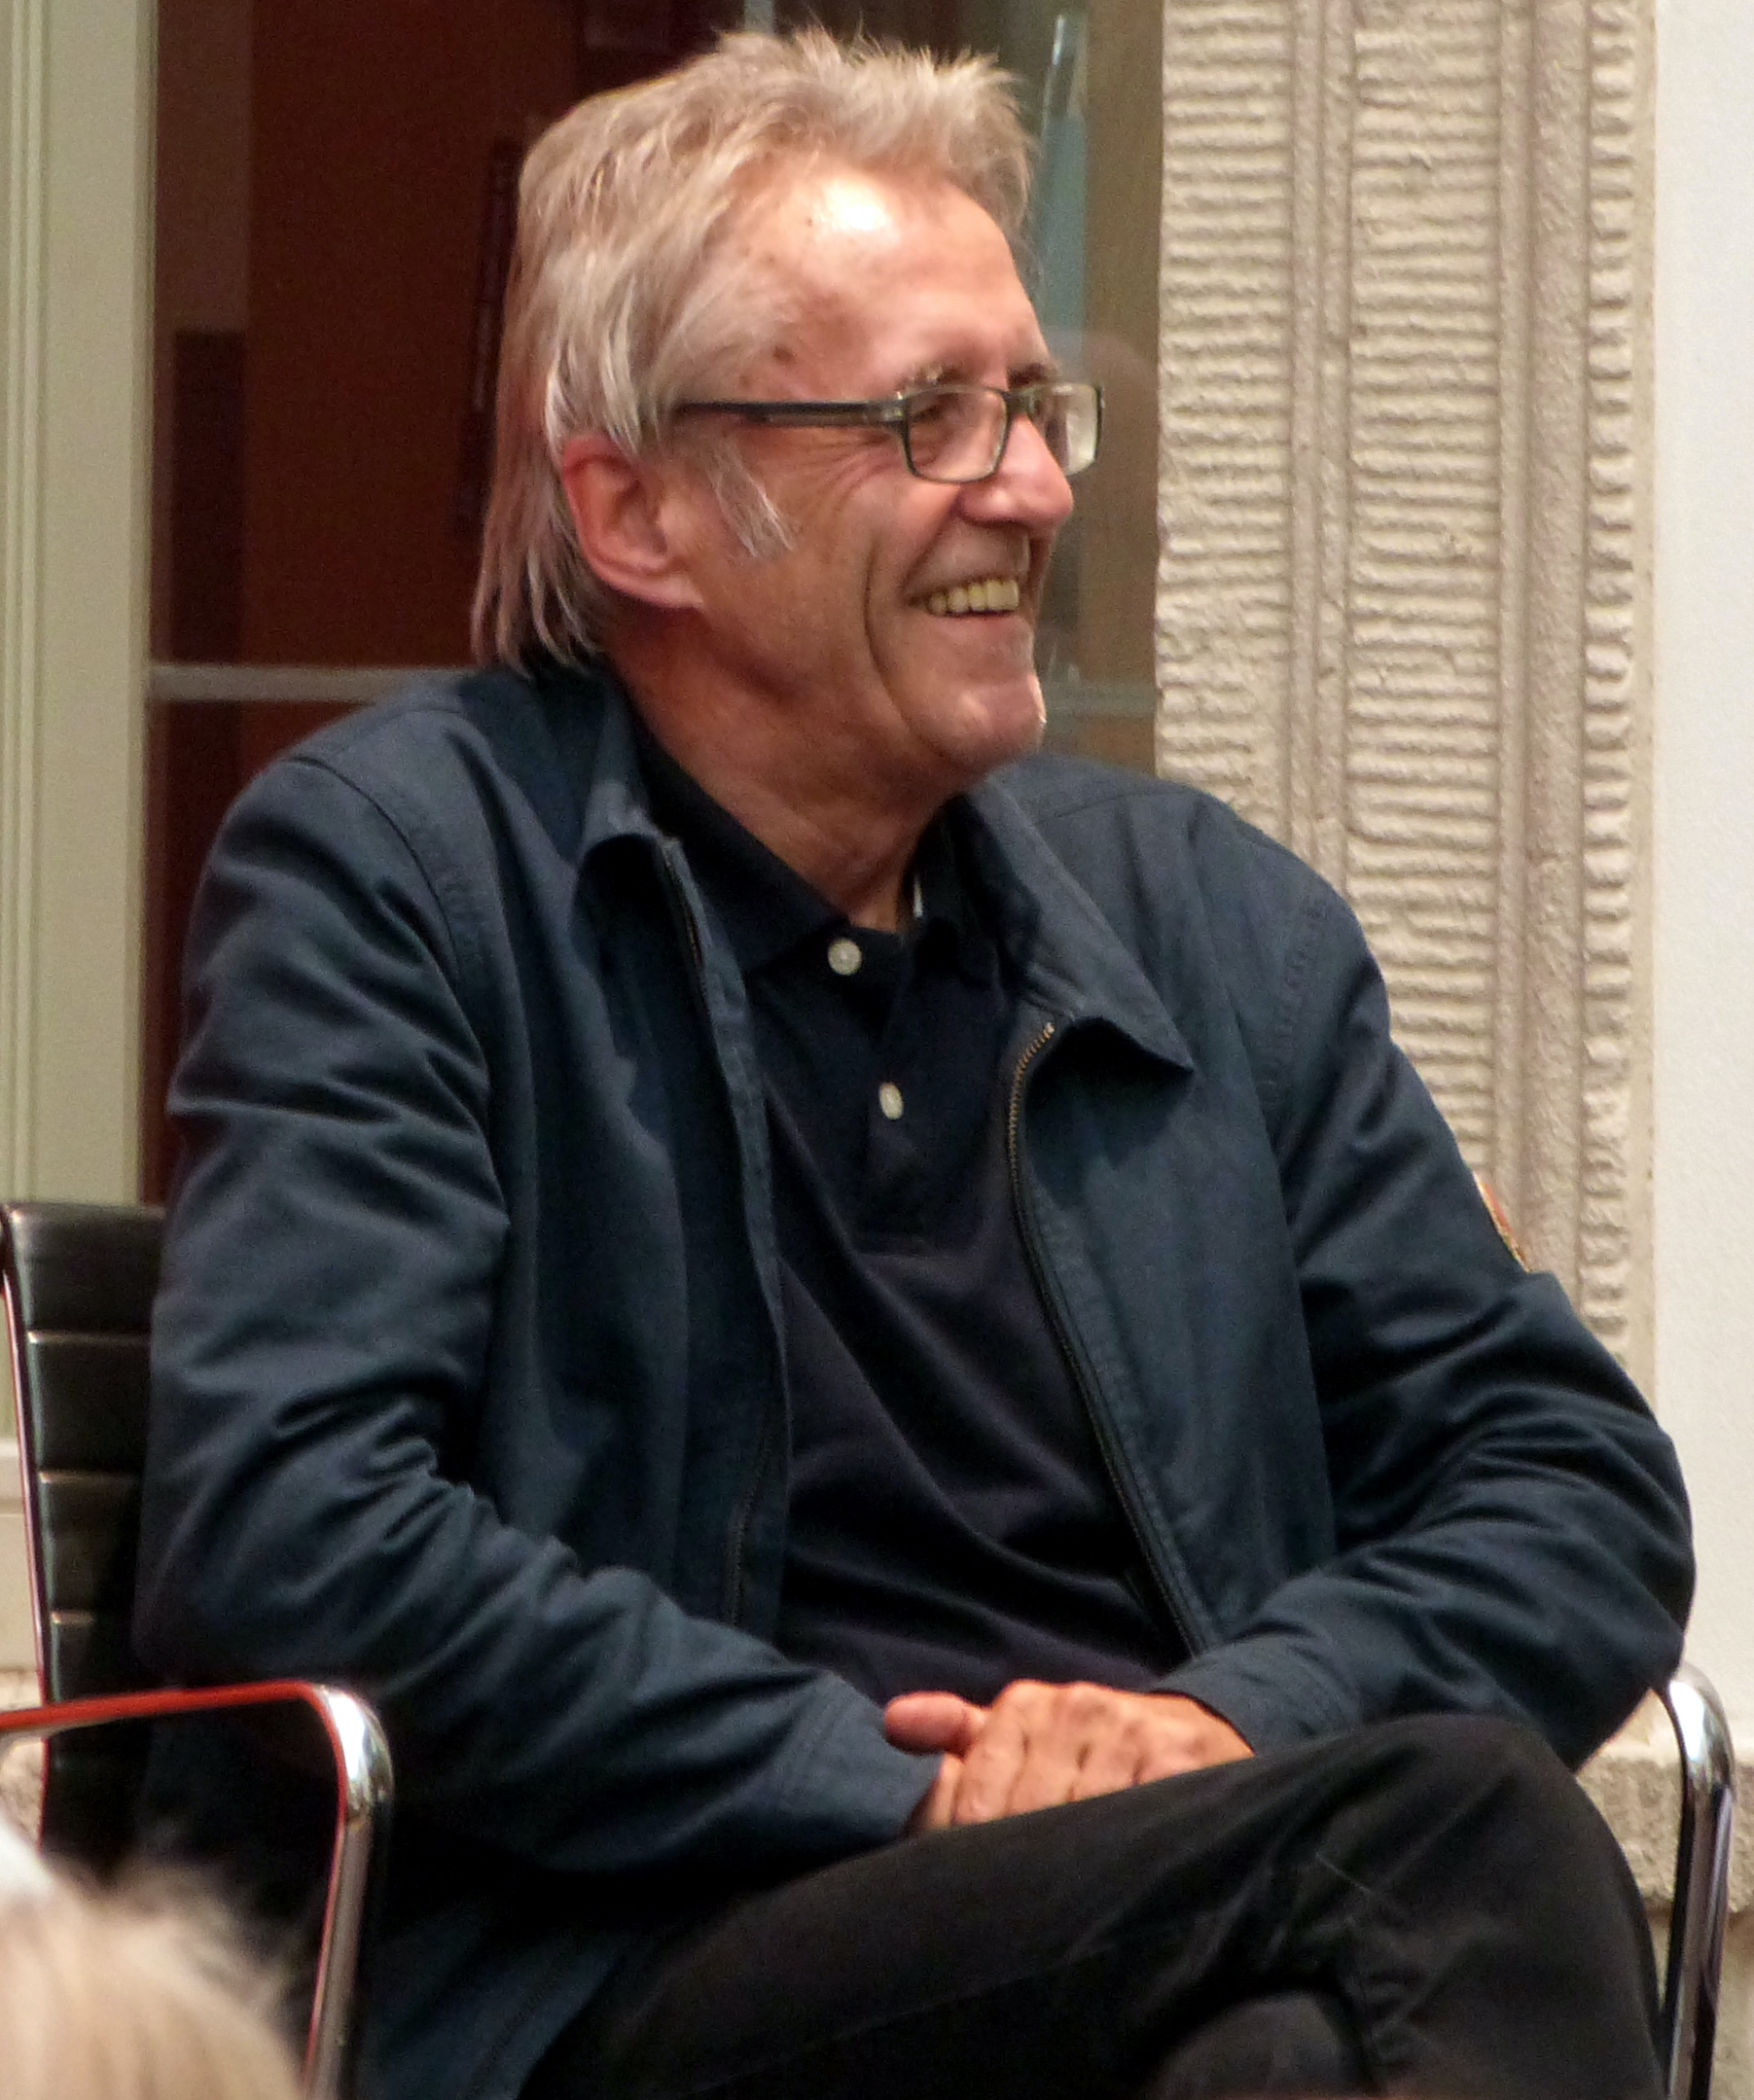 Der Autor und Kulturmanager Klaus Kufeld bei einer Diskussionsrunde auf dem Erlanger Poetenfest am 27. August 2017 © Wikimedia.org/eigenes Werk/Don Manfredo